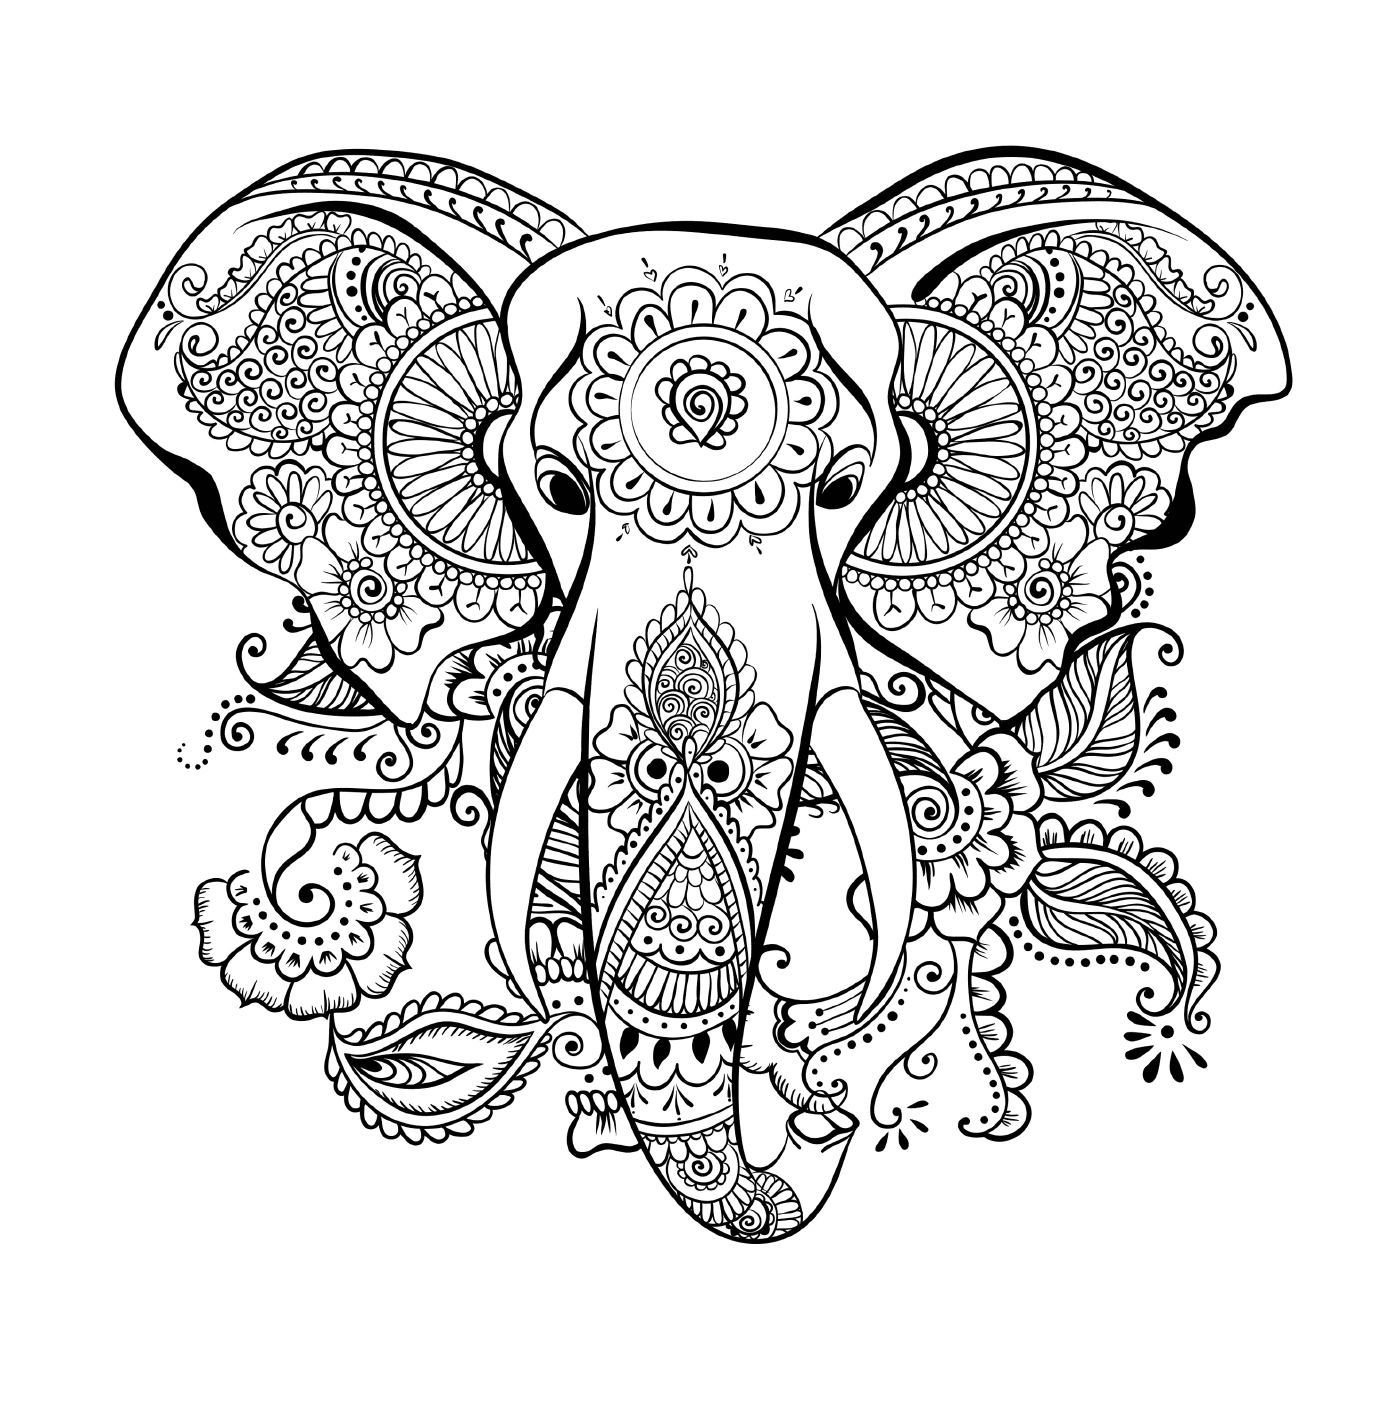  Un elefante con un patrón floral en la cabeza 